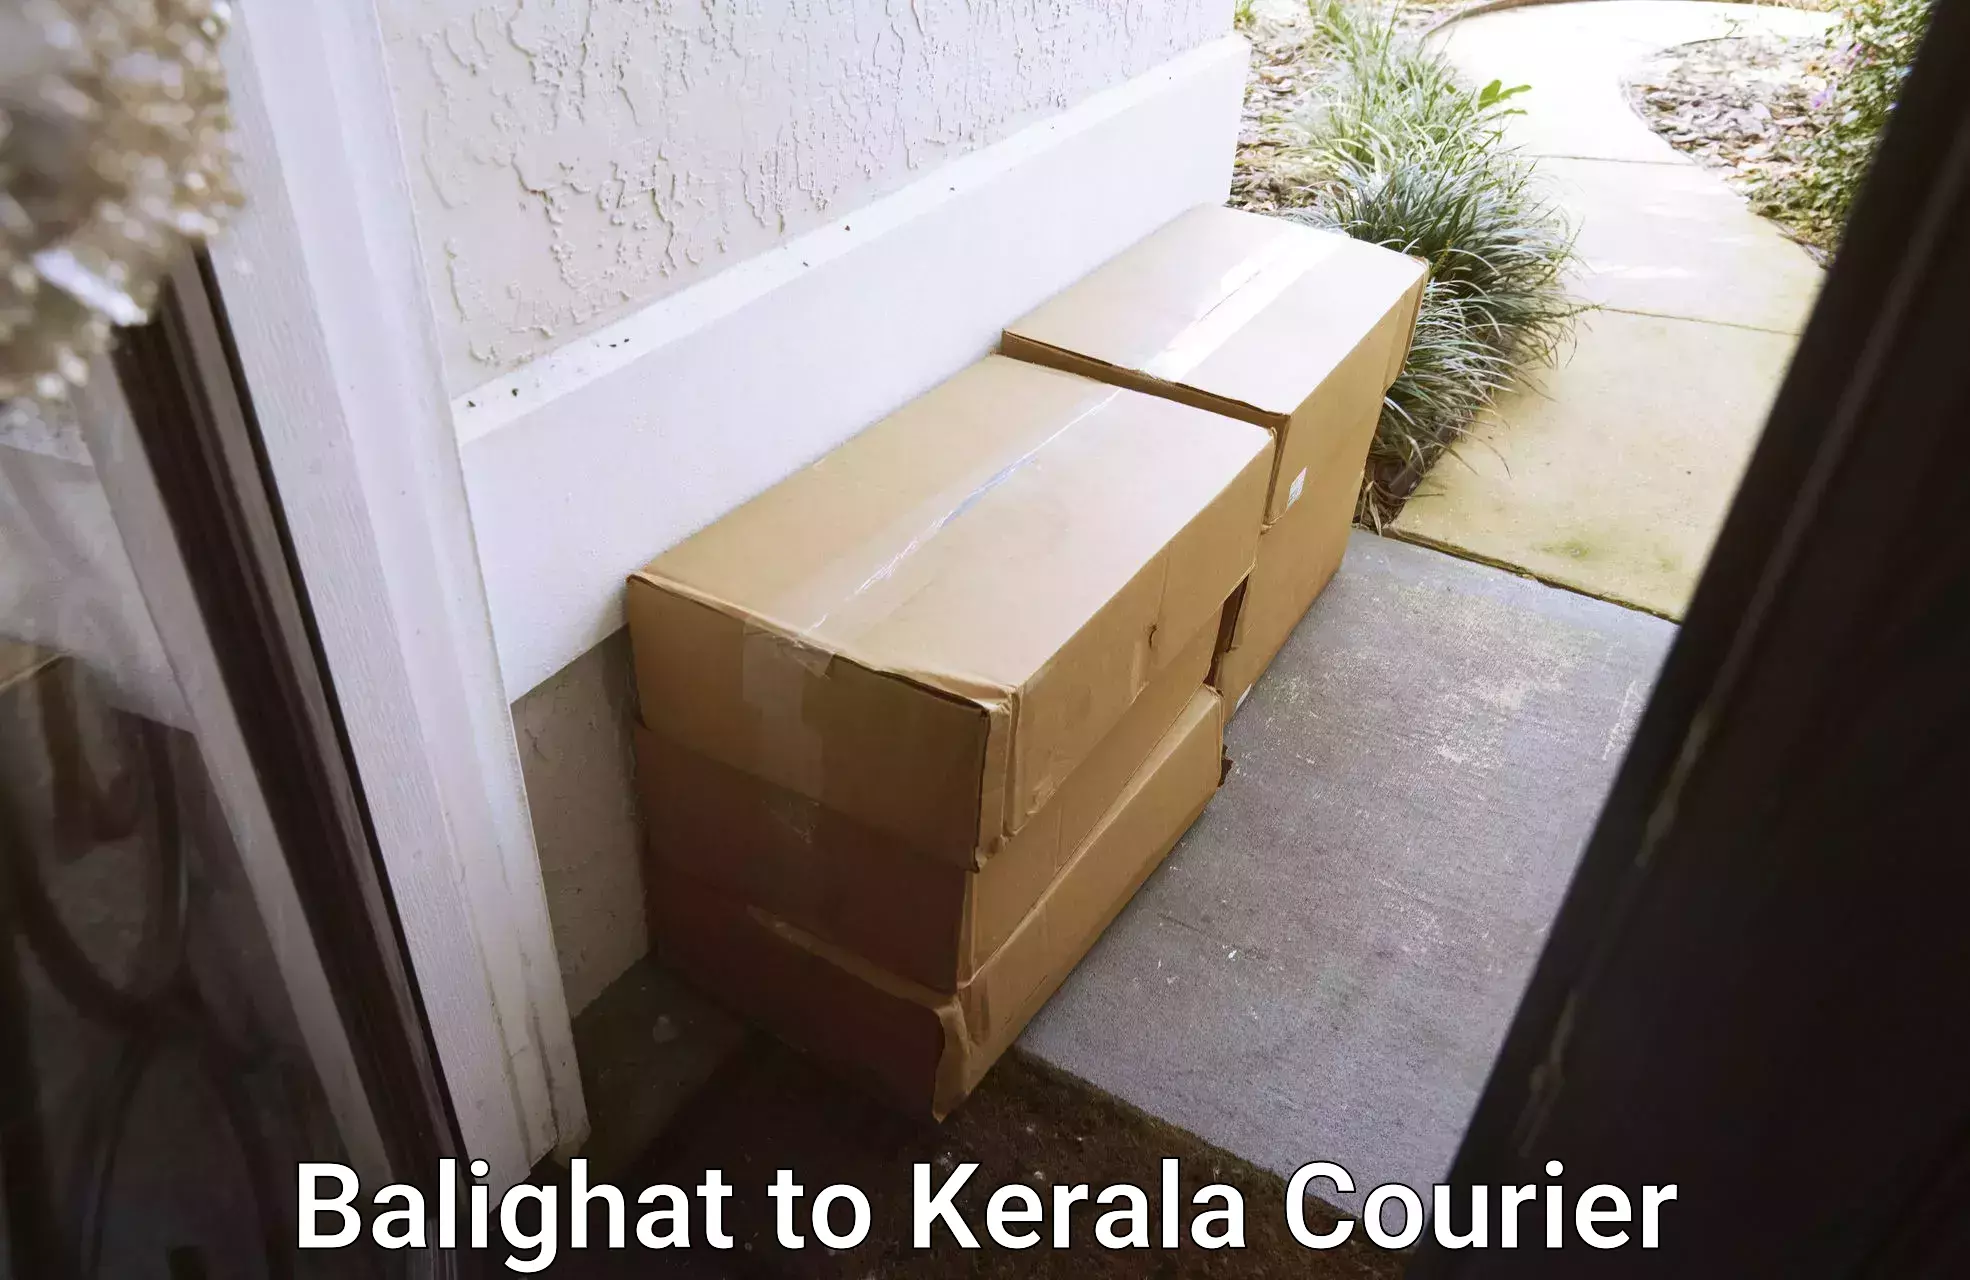 Modern parcel services Balighat to Thiruvananthapuram